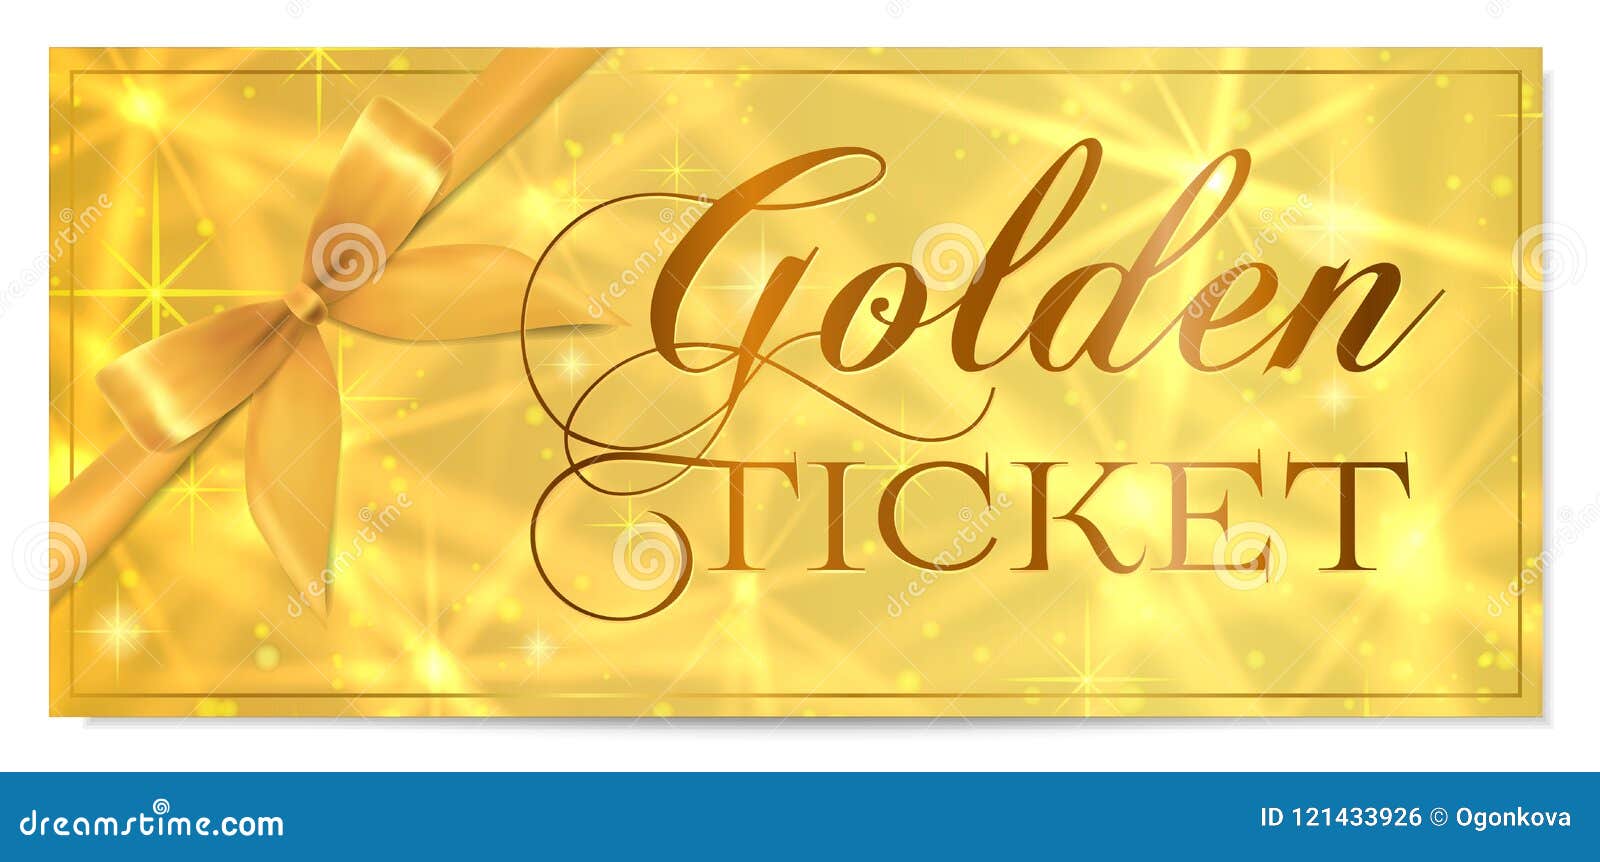 plotagon golden ticket free download